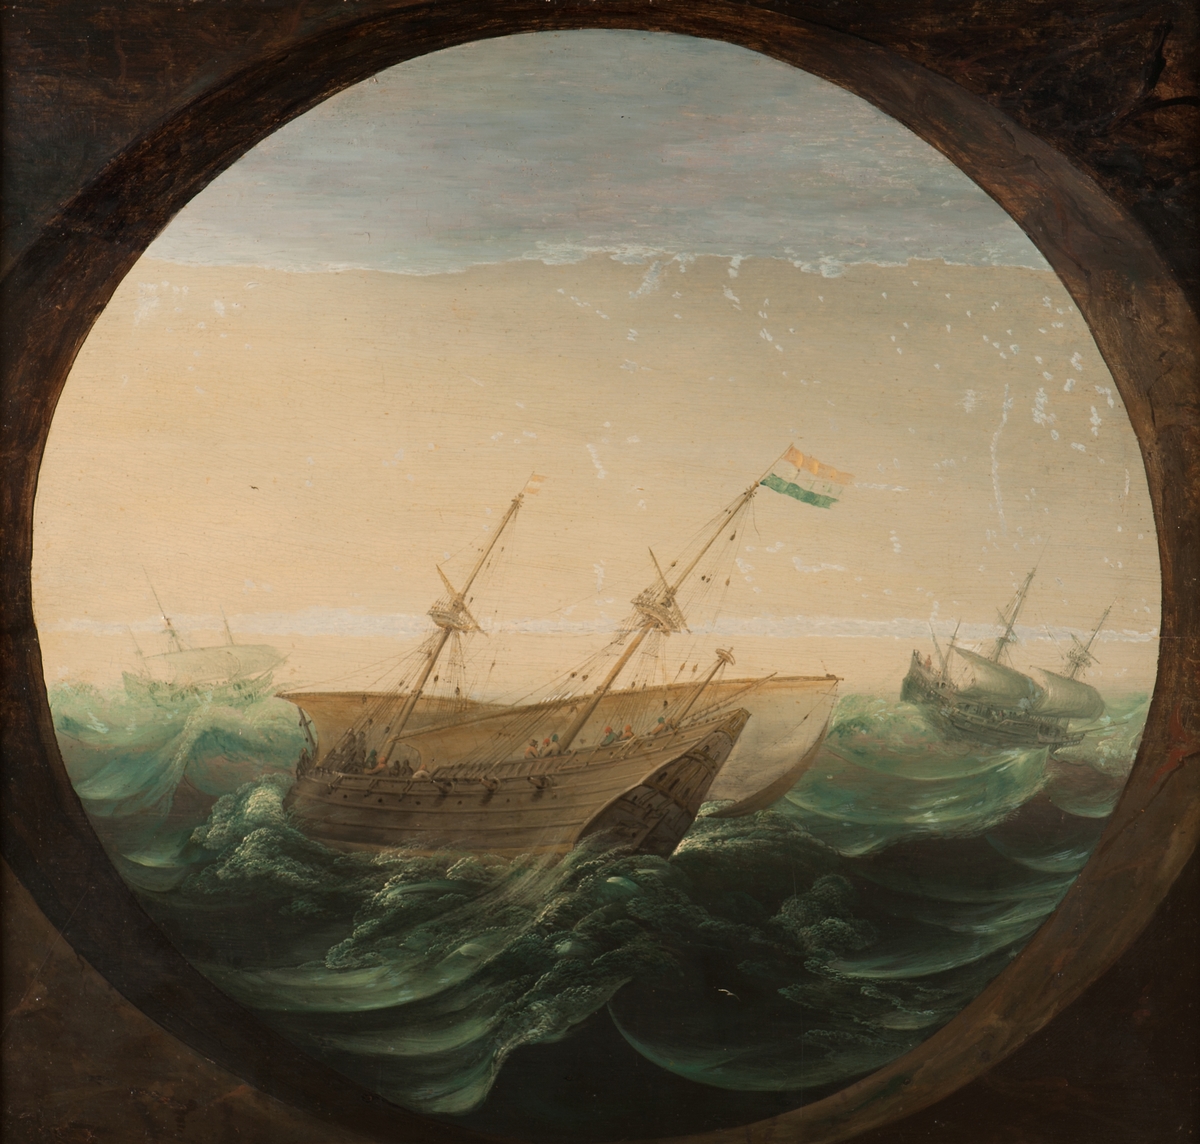 Holländsk galleon, 1500-talet, tremastat skepp med hög avsmalnande akterspegel, sedd mot babords låring, mastkorgar, 3 kanoner i runda gluggar, 2 råsegel på undermasterna. Nederländska flaggan (röd, vit, blå) på stormasten, röd-vit-röd flagga på fockmasten. Upprört hav, väldiga vågor. Ett skepp på vardera sidan. Motivet inramat i en cirkelrund trompe l’oeuil-ram, som ett kikarsikte.

Osignerad. På panelens baksida står skrivet i blyerts (från tidigare konservering?) Abraham Wilart (otydligt).